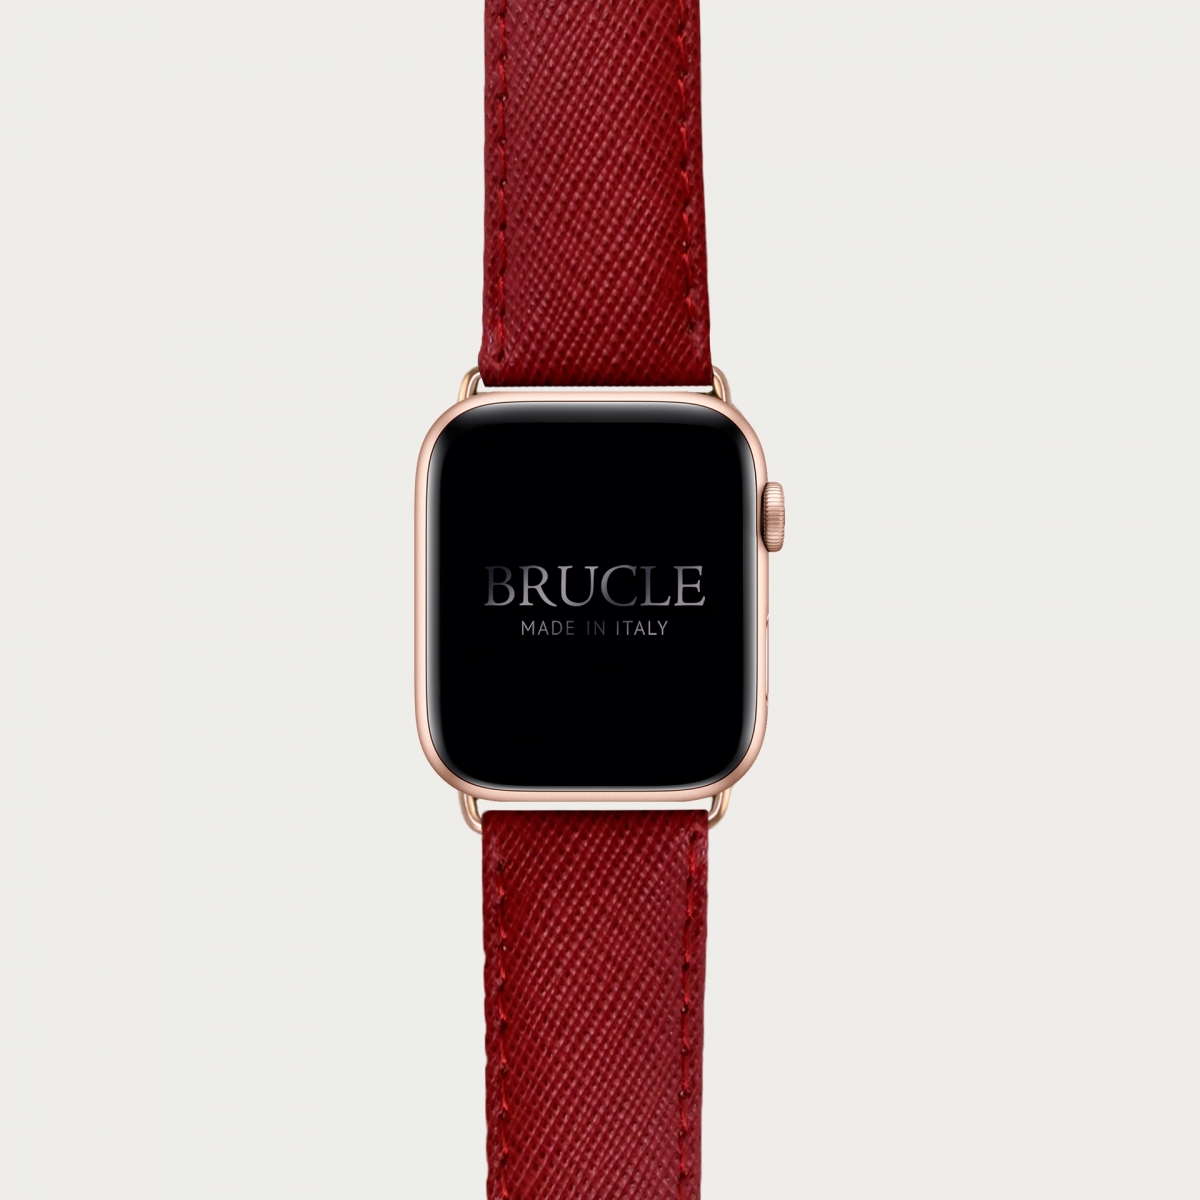 Correa de reloj compatible con Apple Watch / Samsung smartwatch, rojo Saffiano